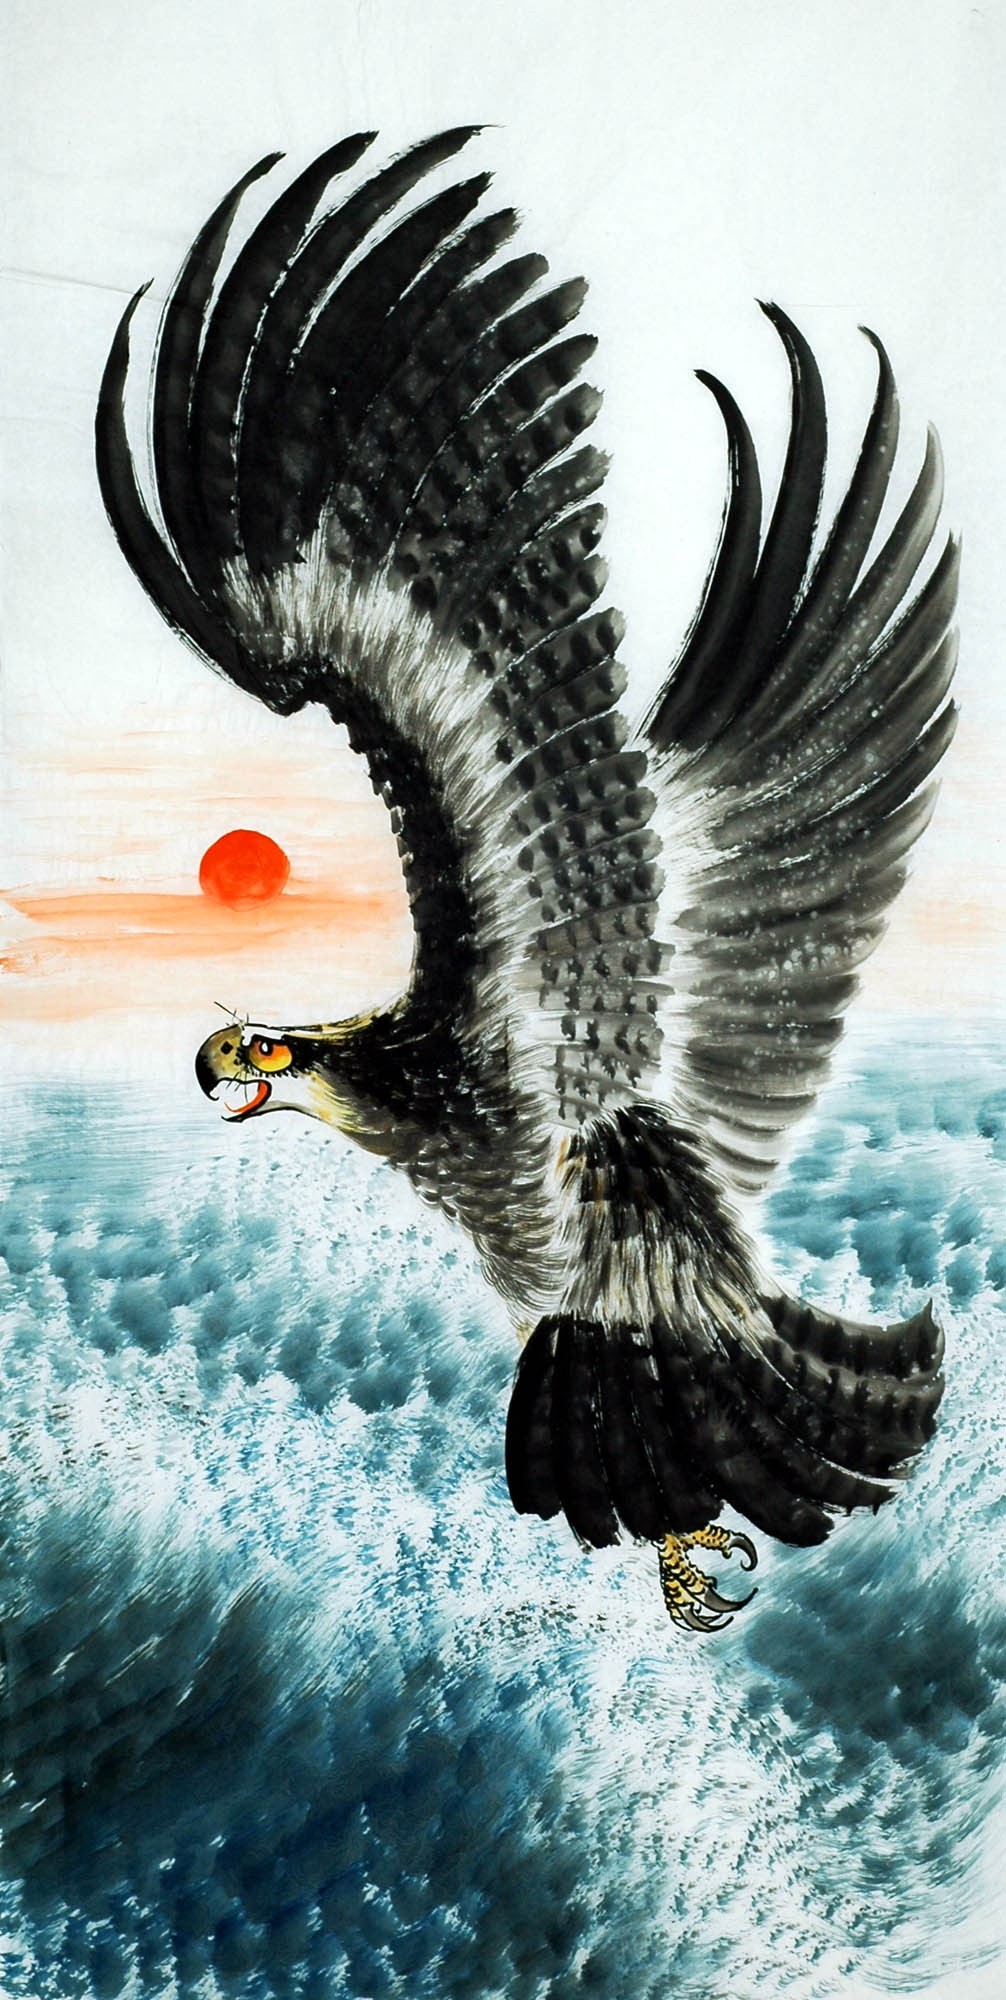 Chinese Eagle Painting - CNAG010532